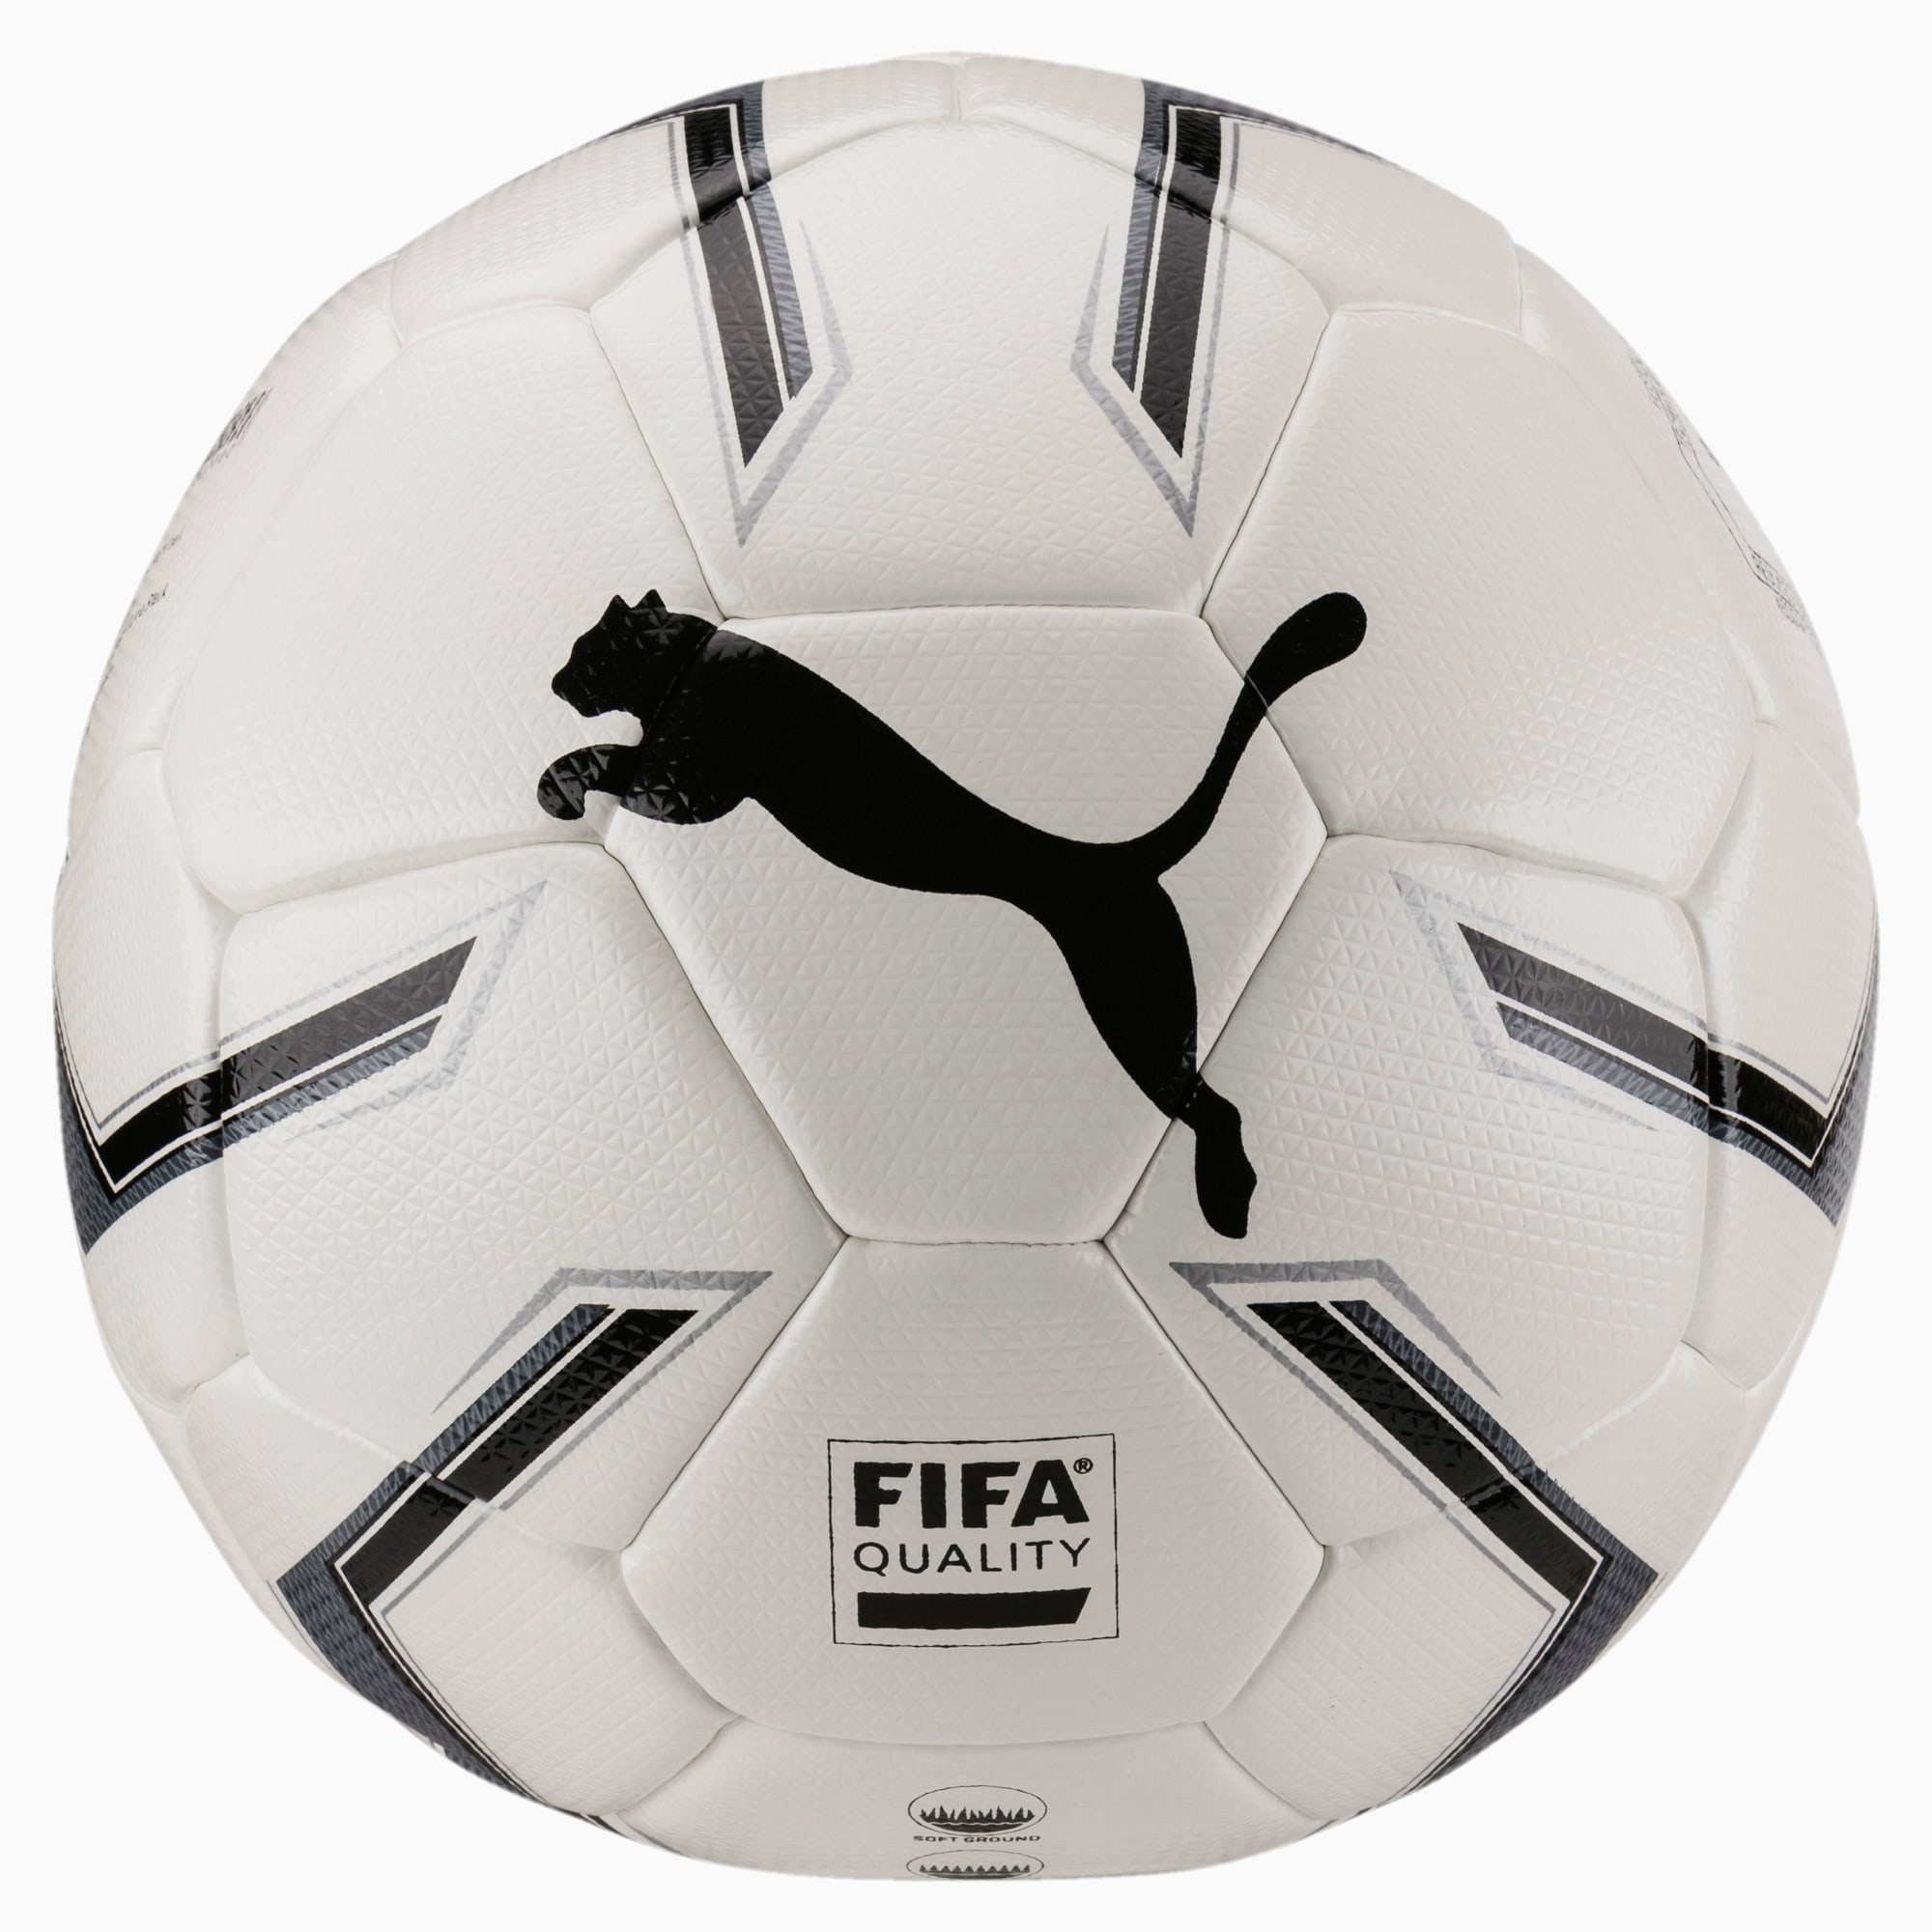 Puma公式 プーマエリート 2 2 ハイブリット サイズ4 Fifa Quality ボール J プーマ サッカー プーマ